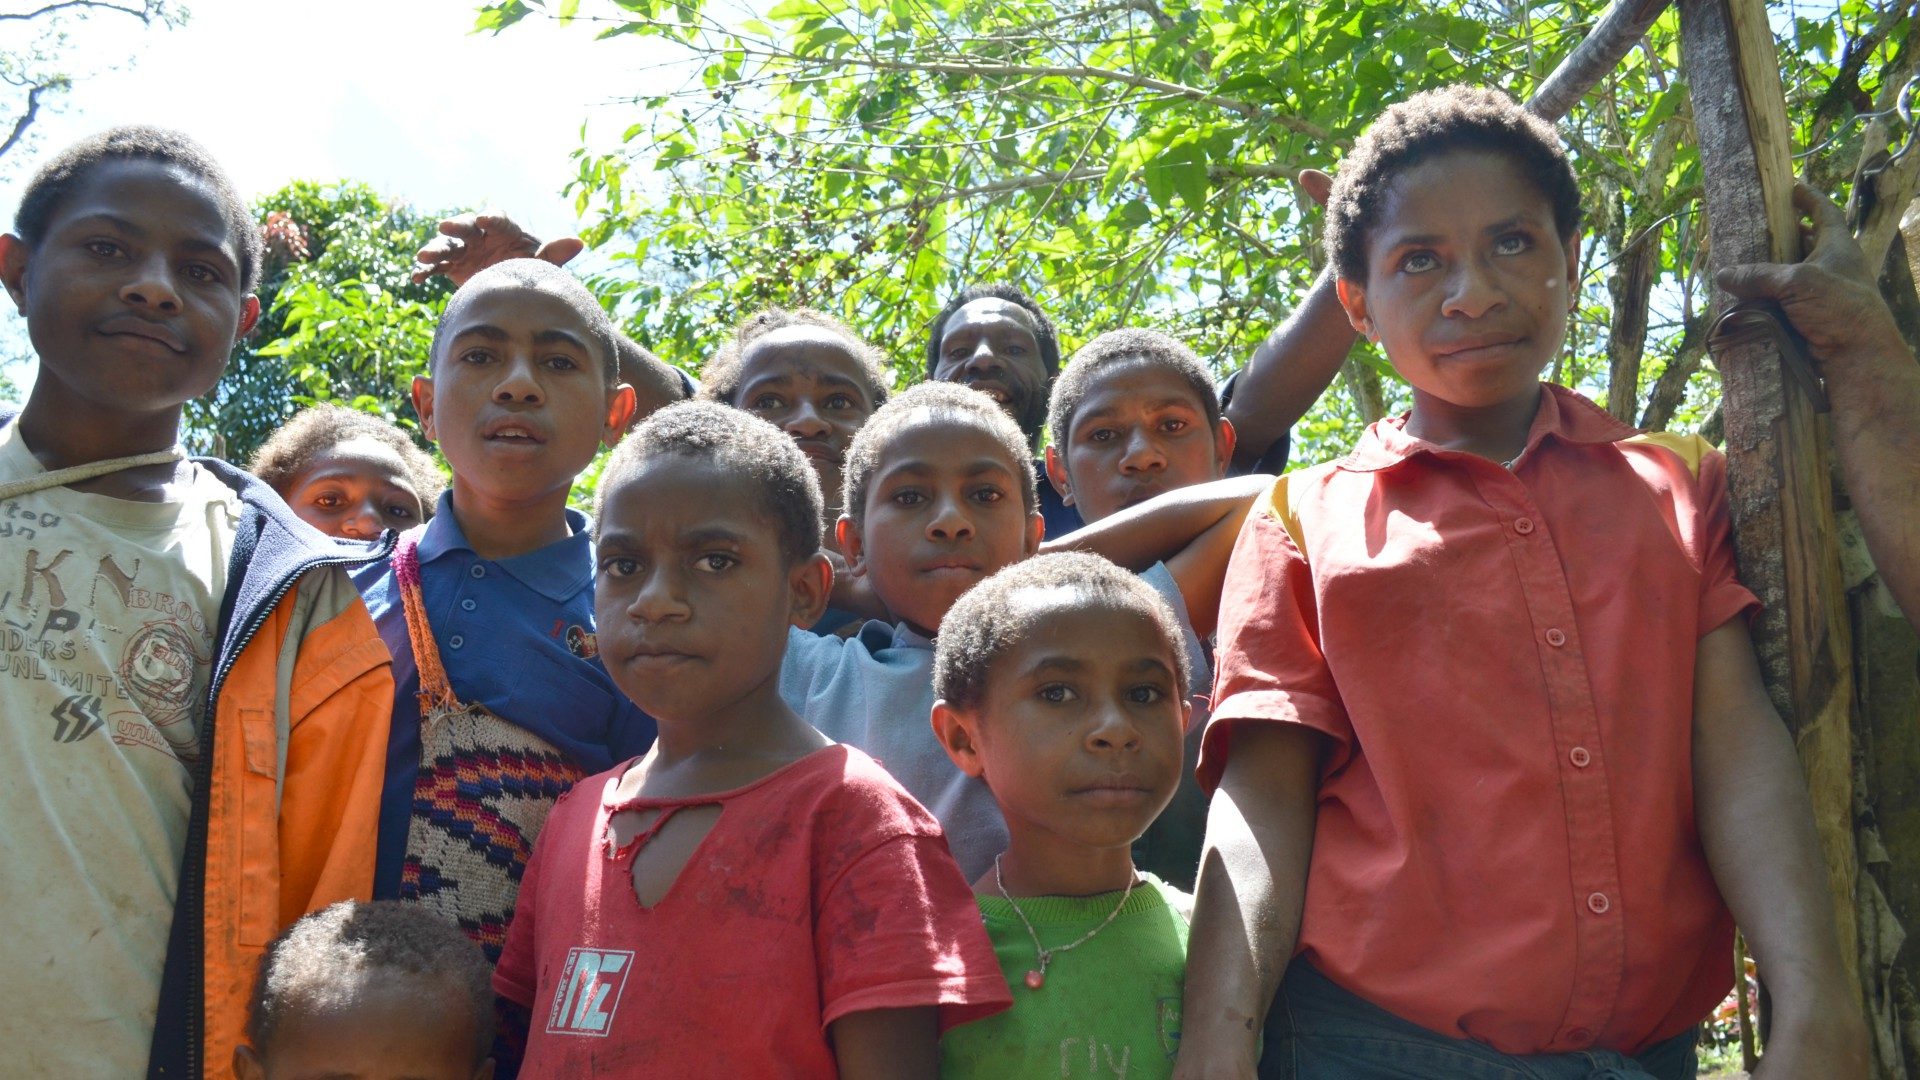 Les populations de Papouasie-Nouvelle-Guinée sont marquées par une grande pauvreté | © eGuide Travel/Flickr/CC BY 2.0